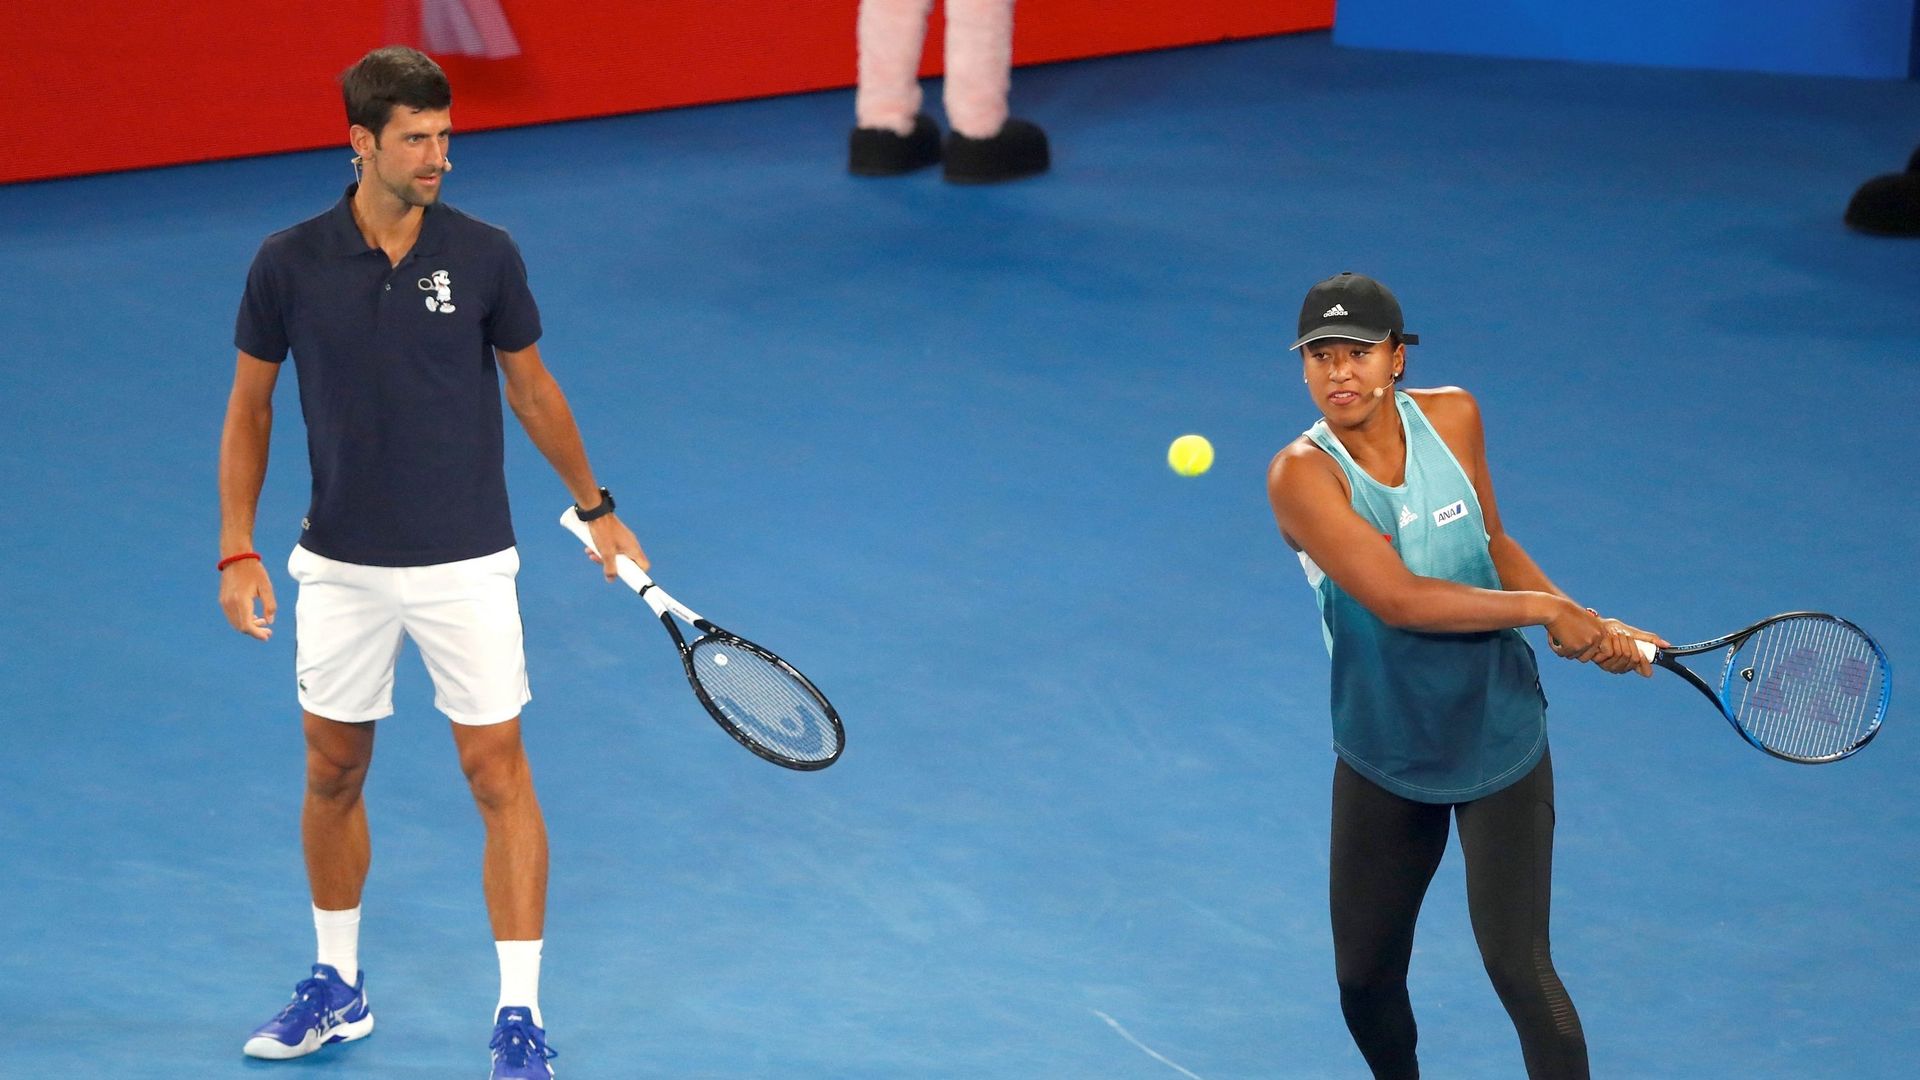 Le N.1 mondial Novak Djokovic a apporté mardi son soutien à Naomi Osaka, qui s’est retirée de Roland-Garros après une polémique sur son refus de participer aux conférences de presse pour se préserver mentalement, estimant qu’elle était "très courageuse".